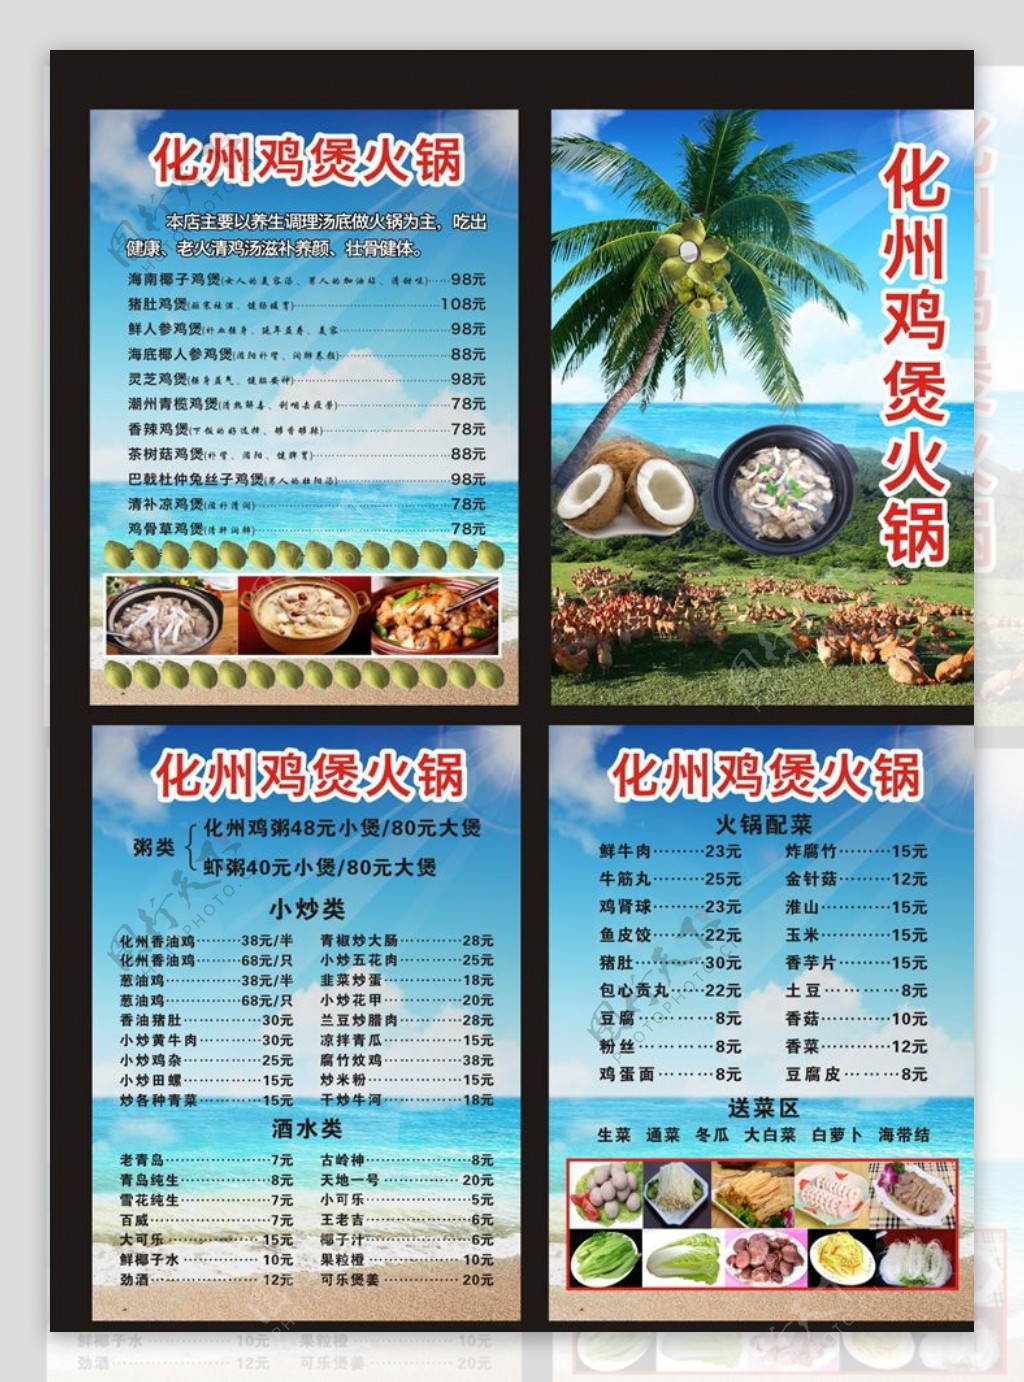 椰子鸡菜单